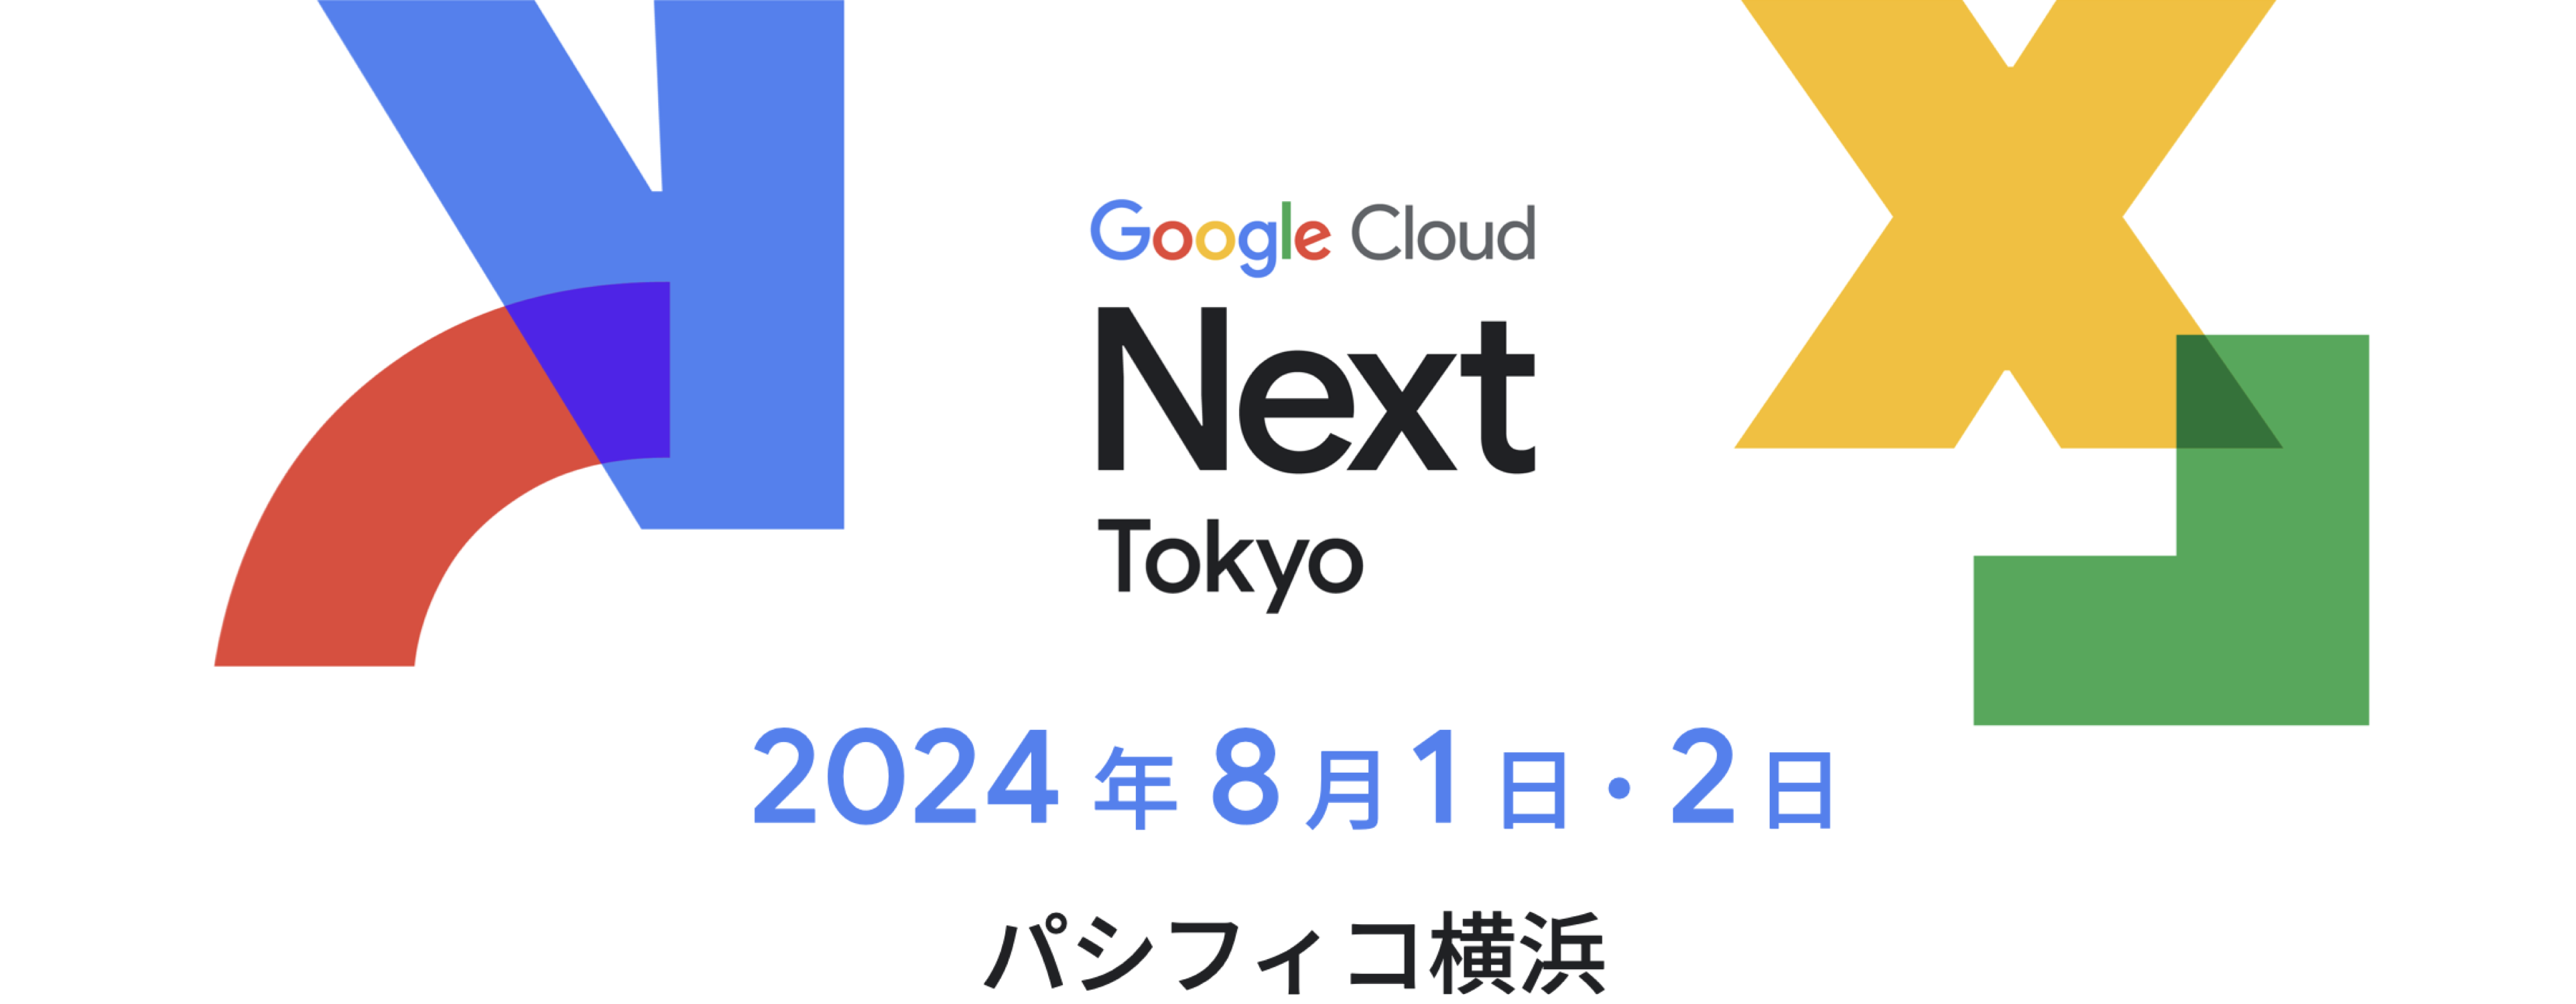 概要 - Google Cloud Next Tokyo '23